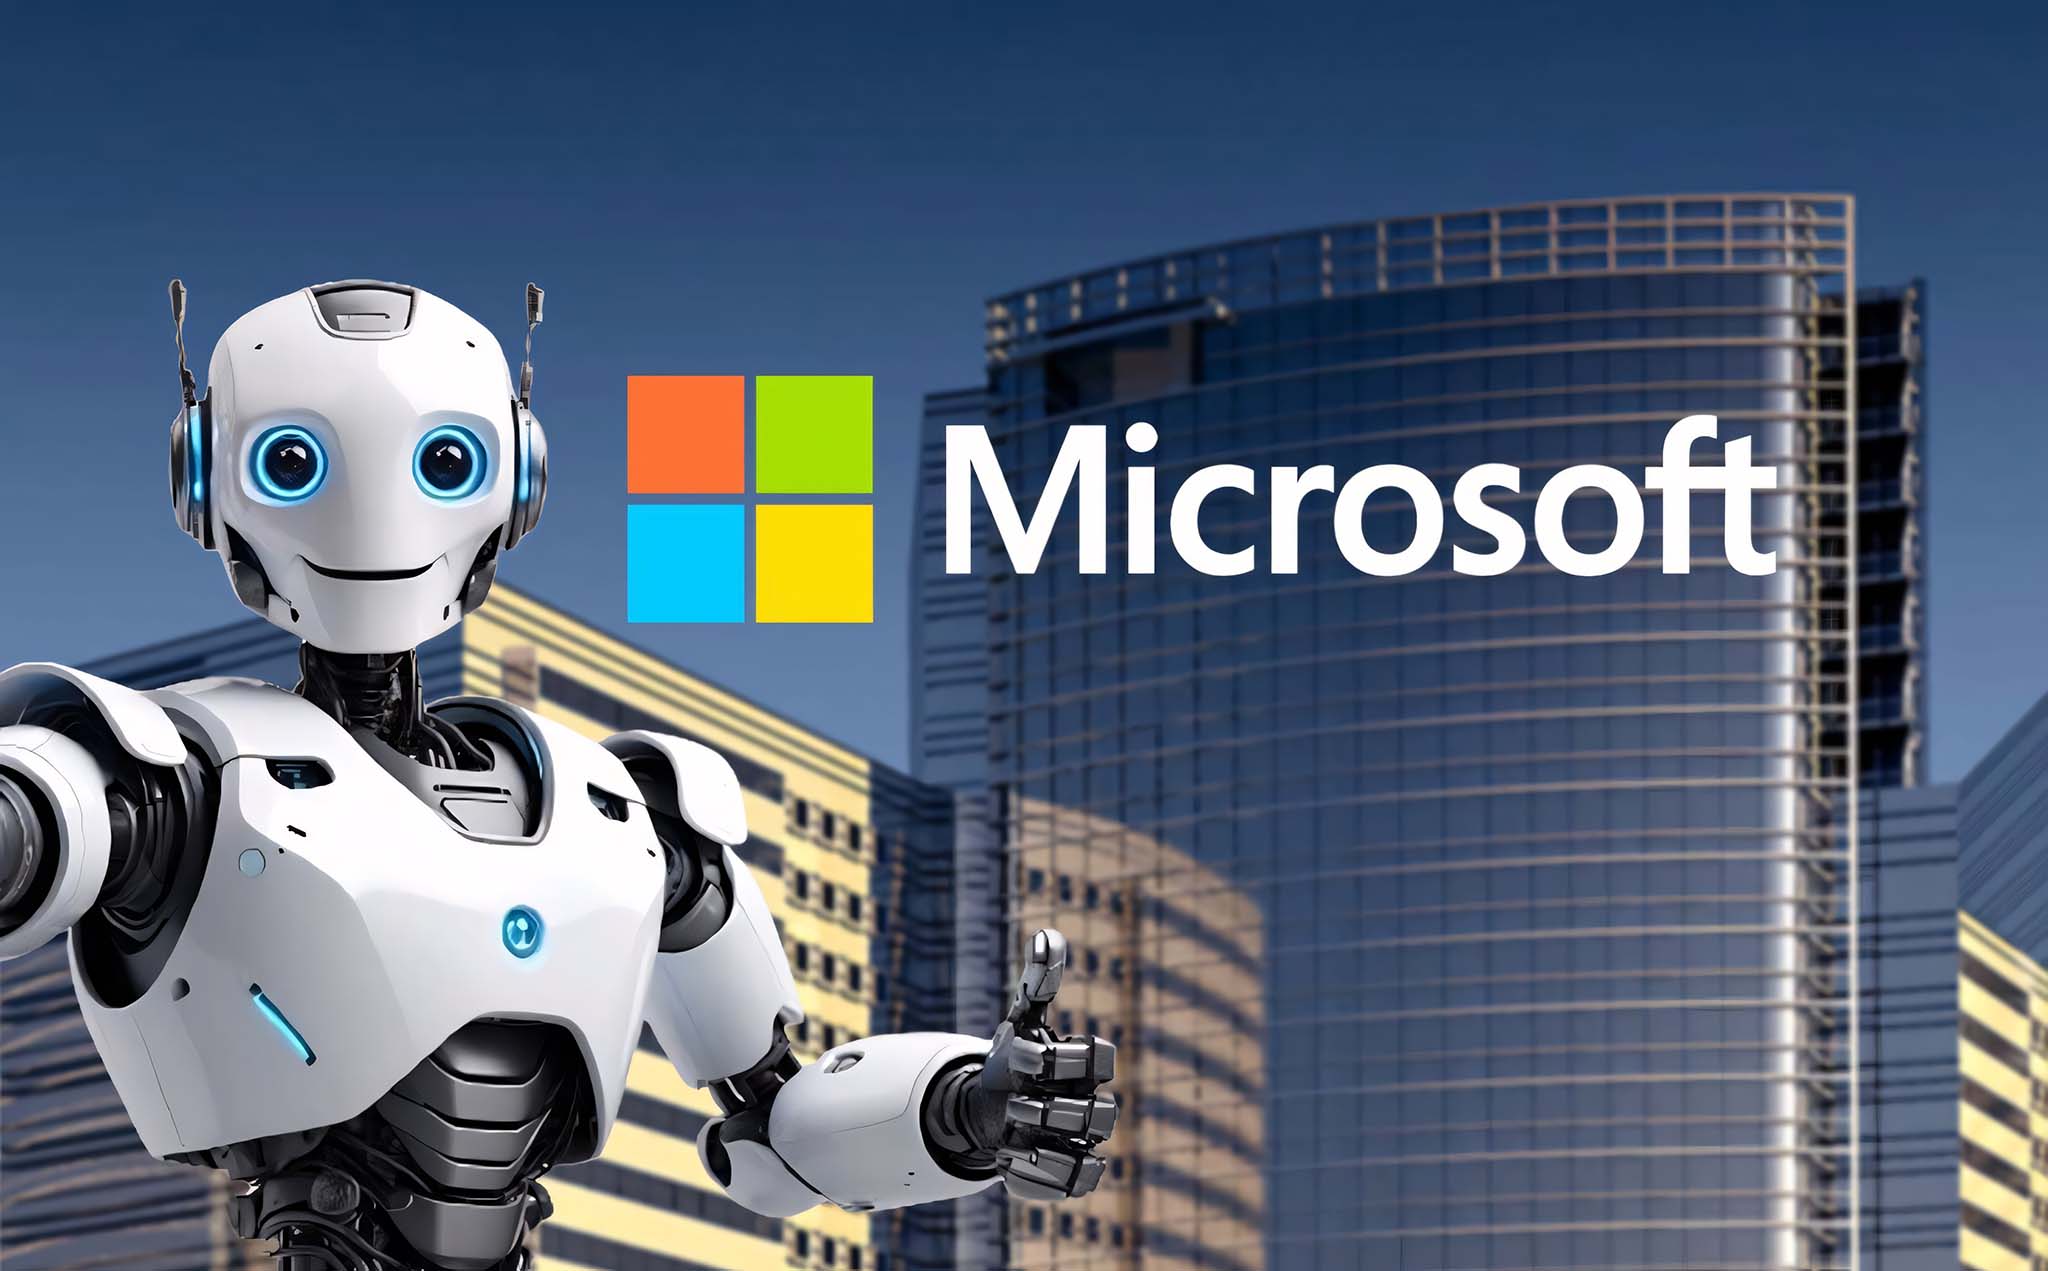 Robot parado frente a la ciudad con el logo de Microsoft